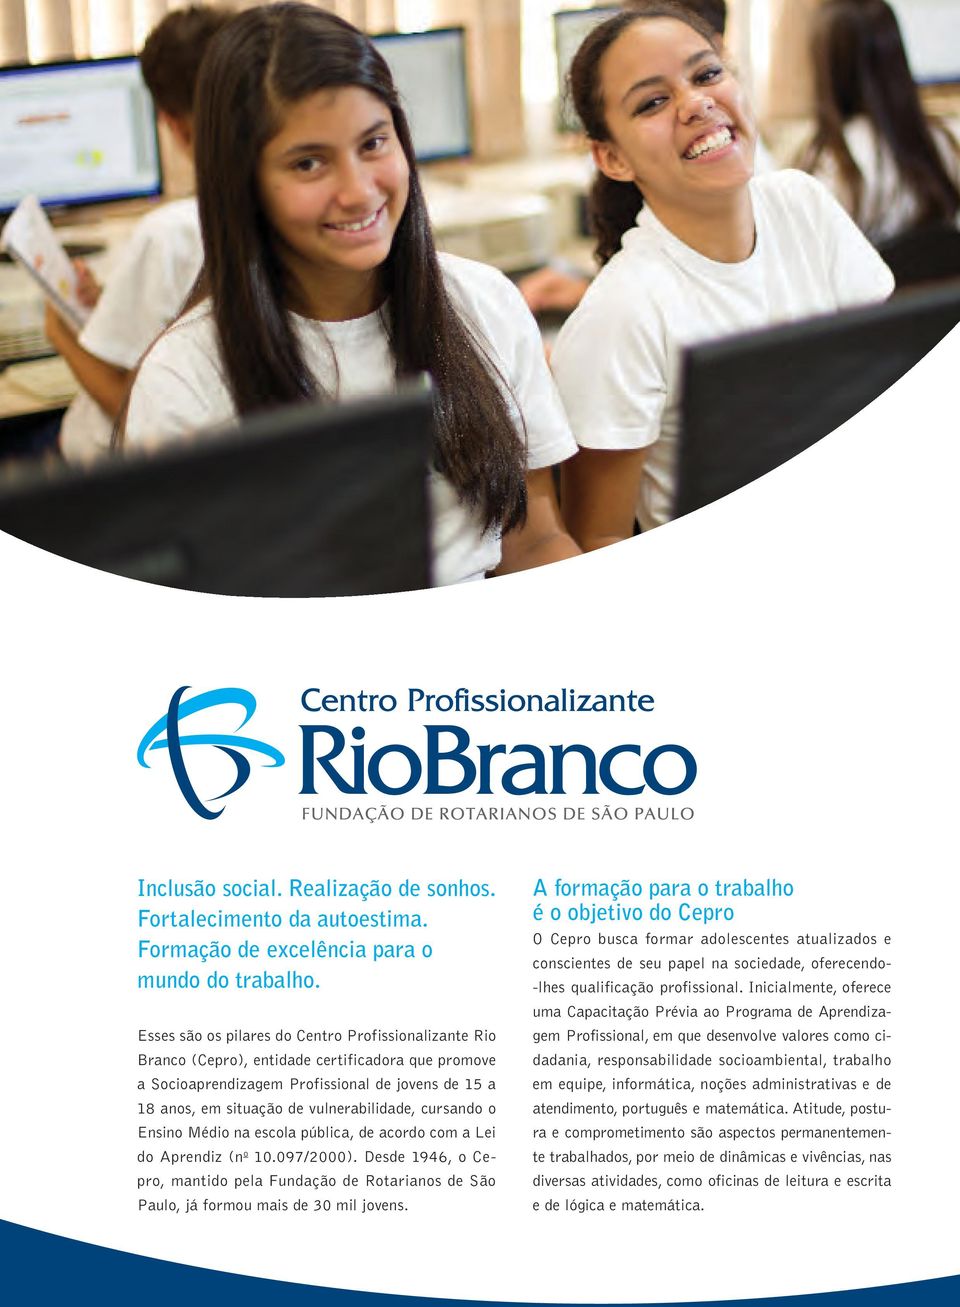 cursando o Ensino Médio na escola pública, de acordo com a Lei do Aprendiz (n o 10.097/2000). Desde 1946, o Cepro, mantido pela Fundação de Rotarianos de São Paulo, já formou mais de 30 mil jovens.